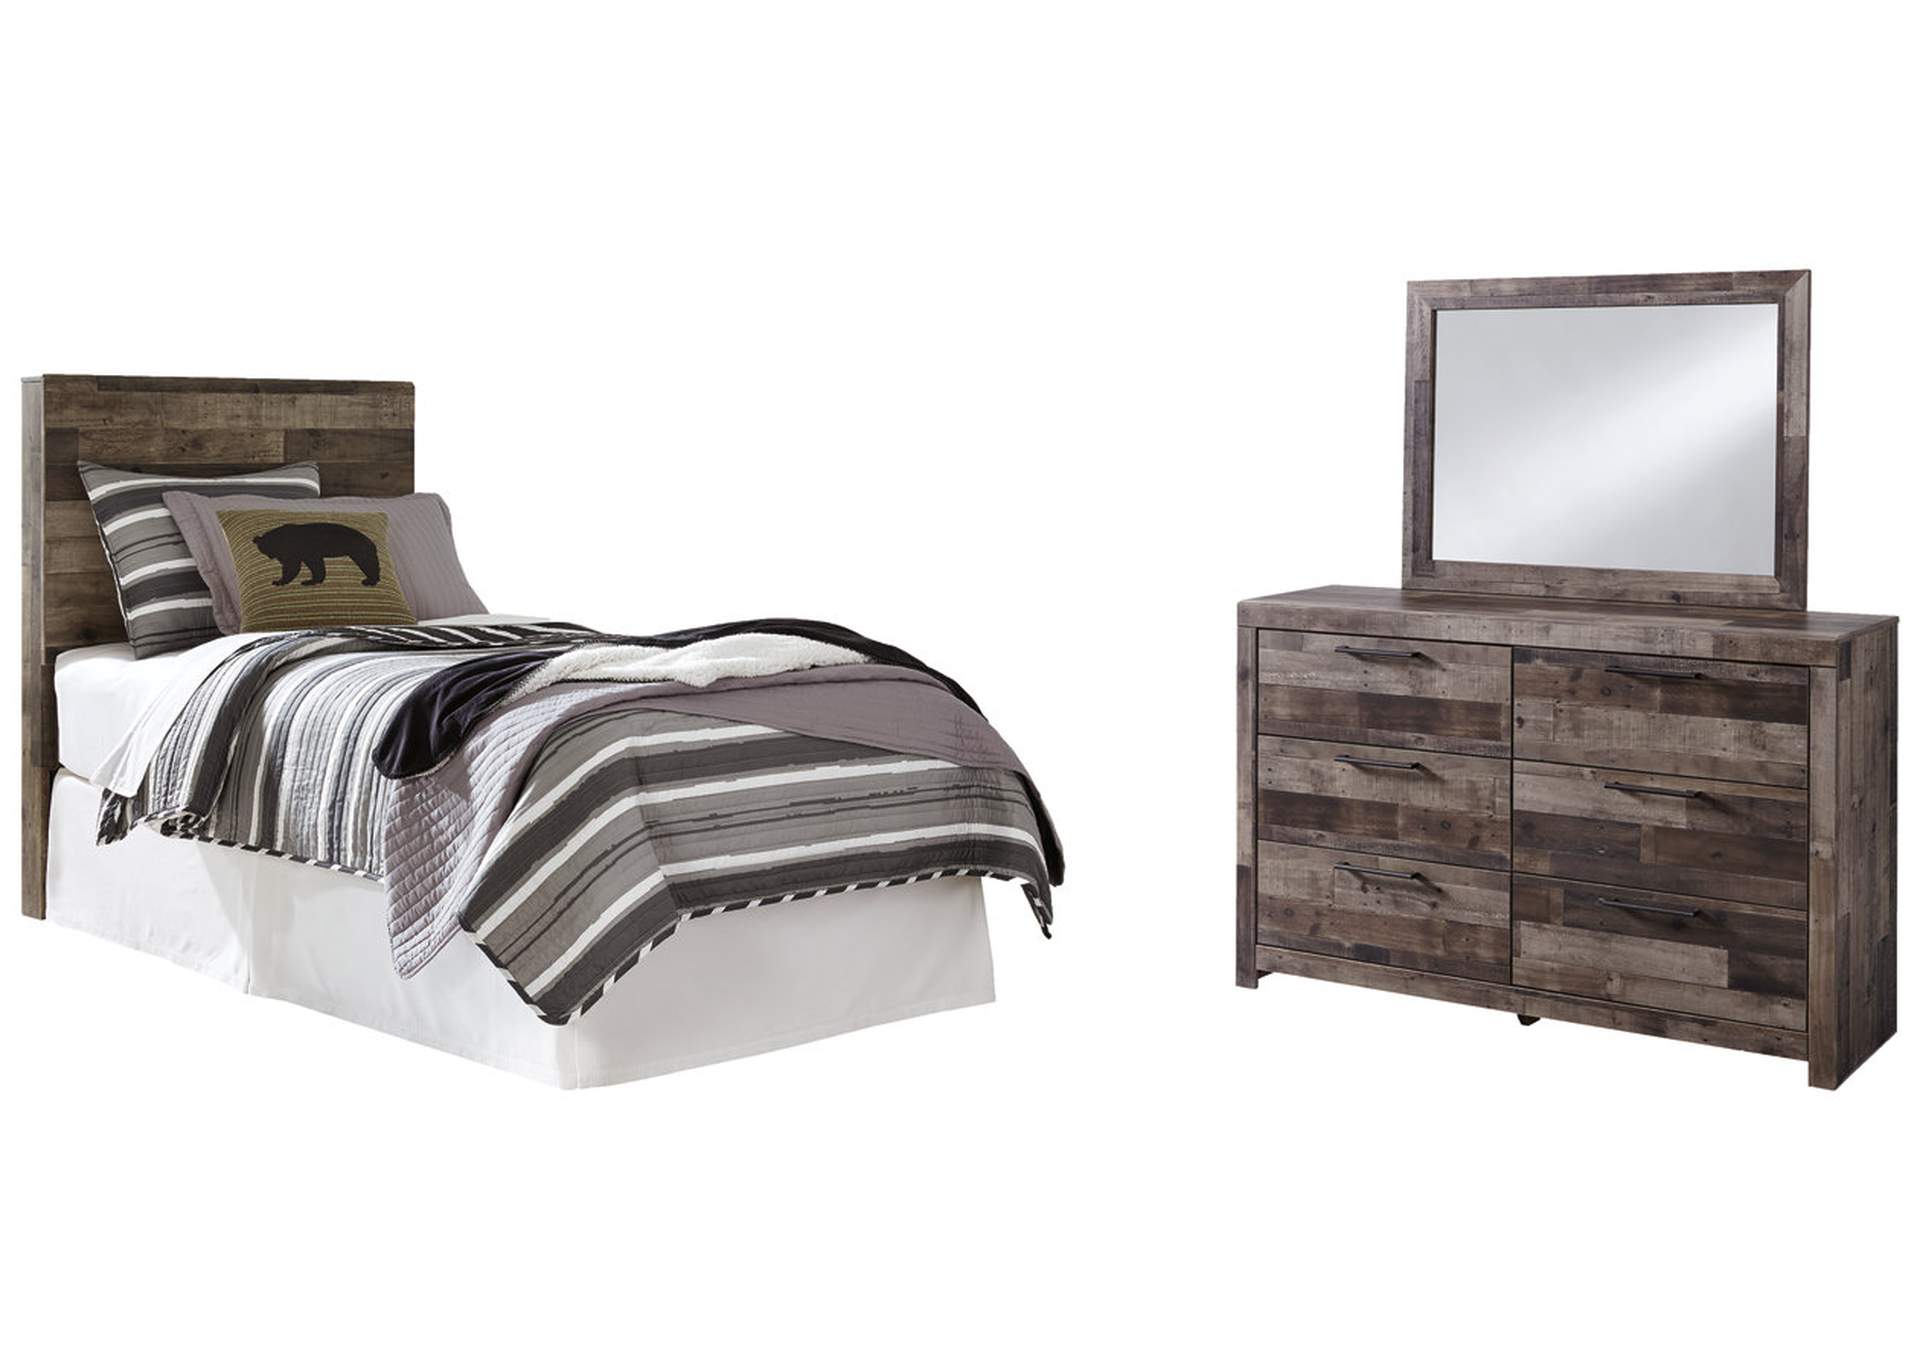 Derekson Twin Panel Headboard Bed with Mirrored Dresser,Benchcraft